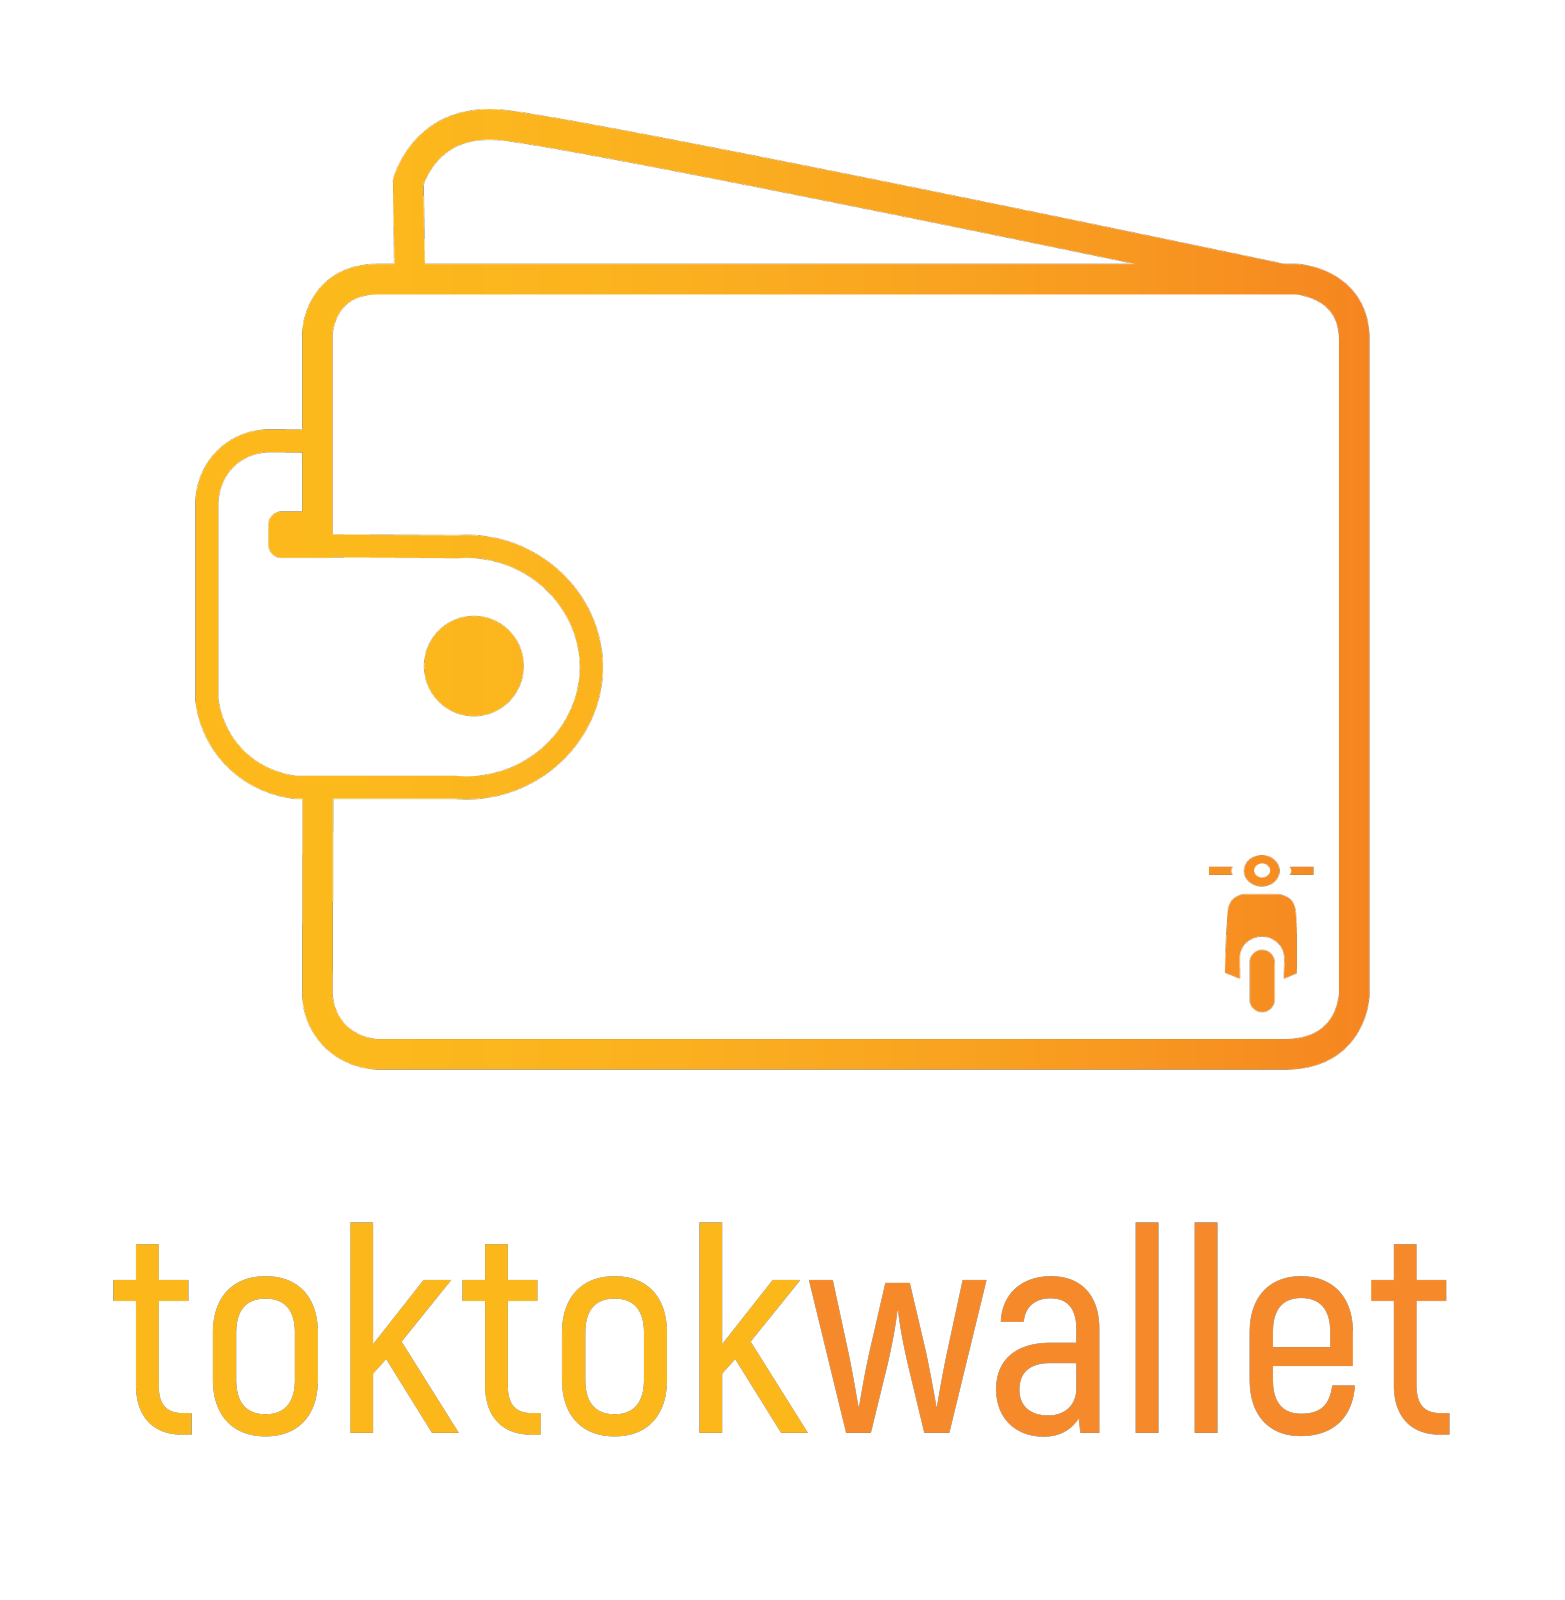 toktokwallet product logo